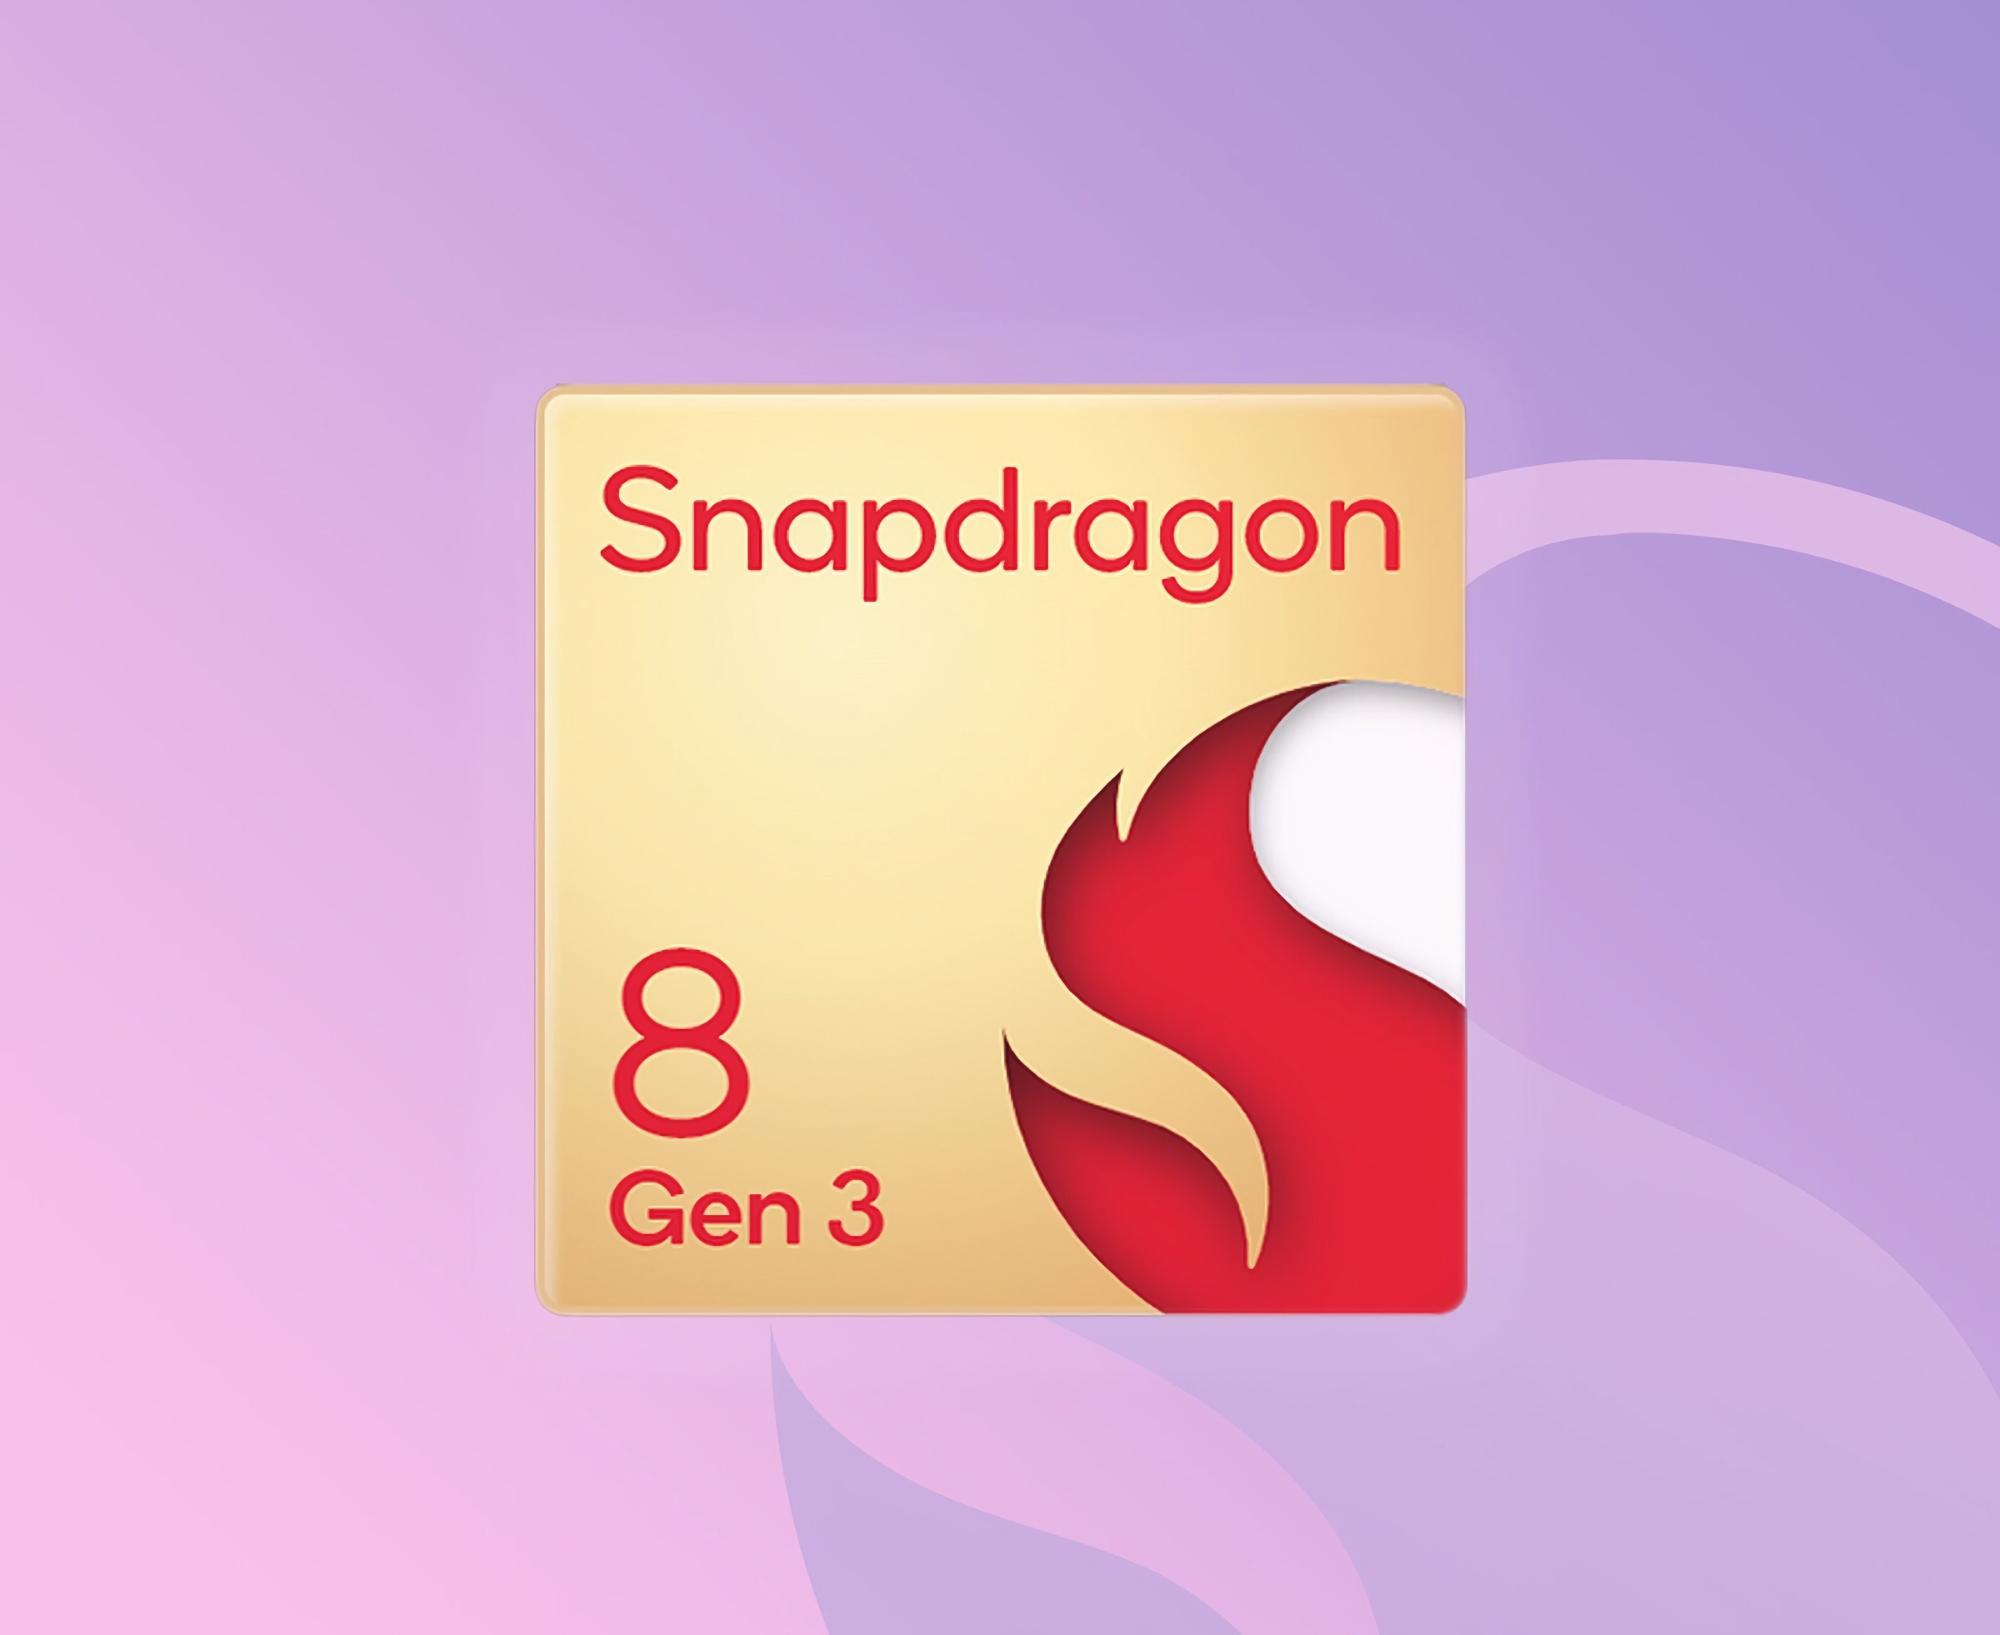 Nu är det officiellt: Qualcomm kommer att presentera Snapdragon 8 Gen 3-chippet vid ett event den 25-26 oktober